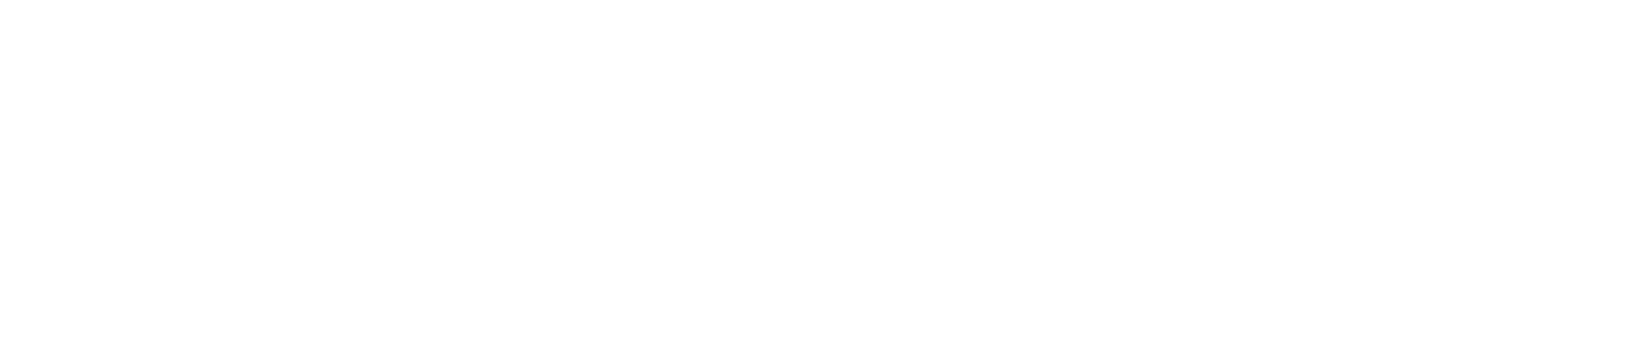 Teledyne logo grand pour les fonds sombres (PNG transparent)